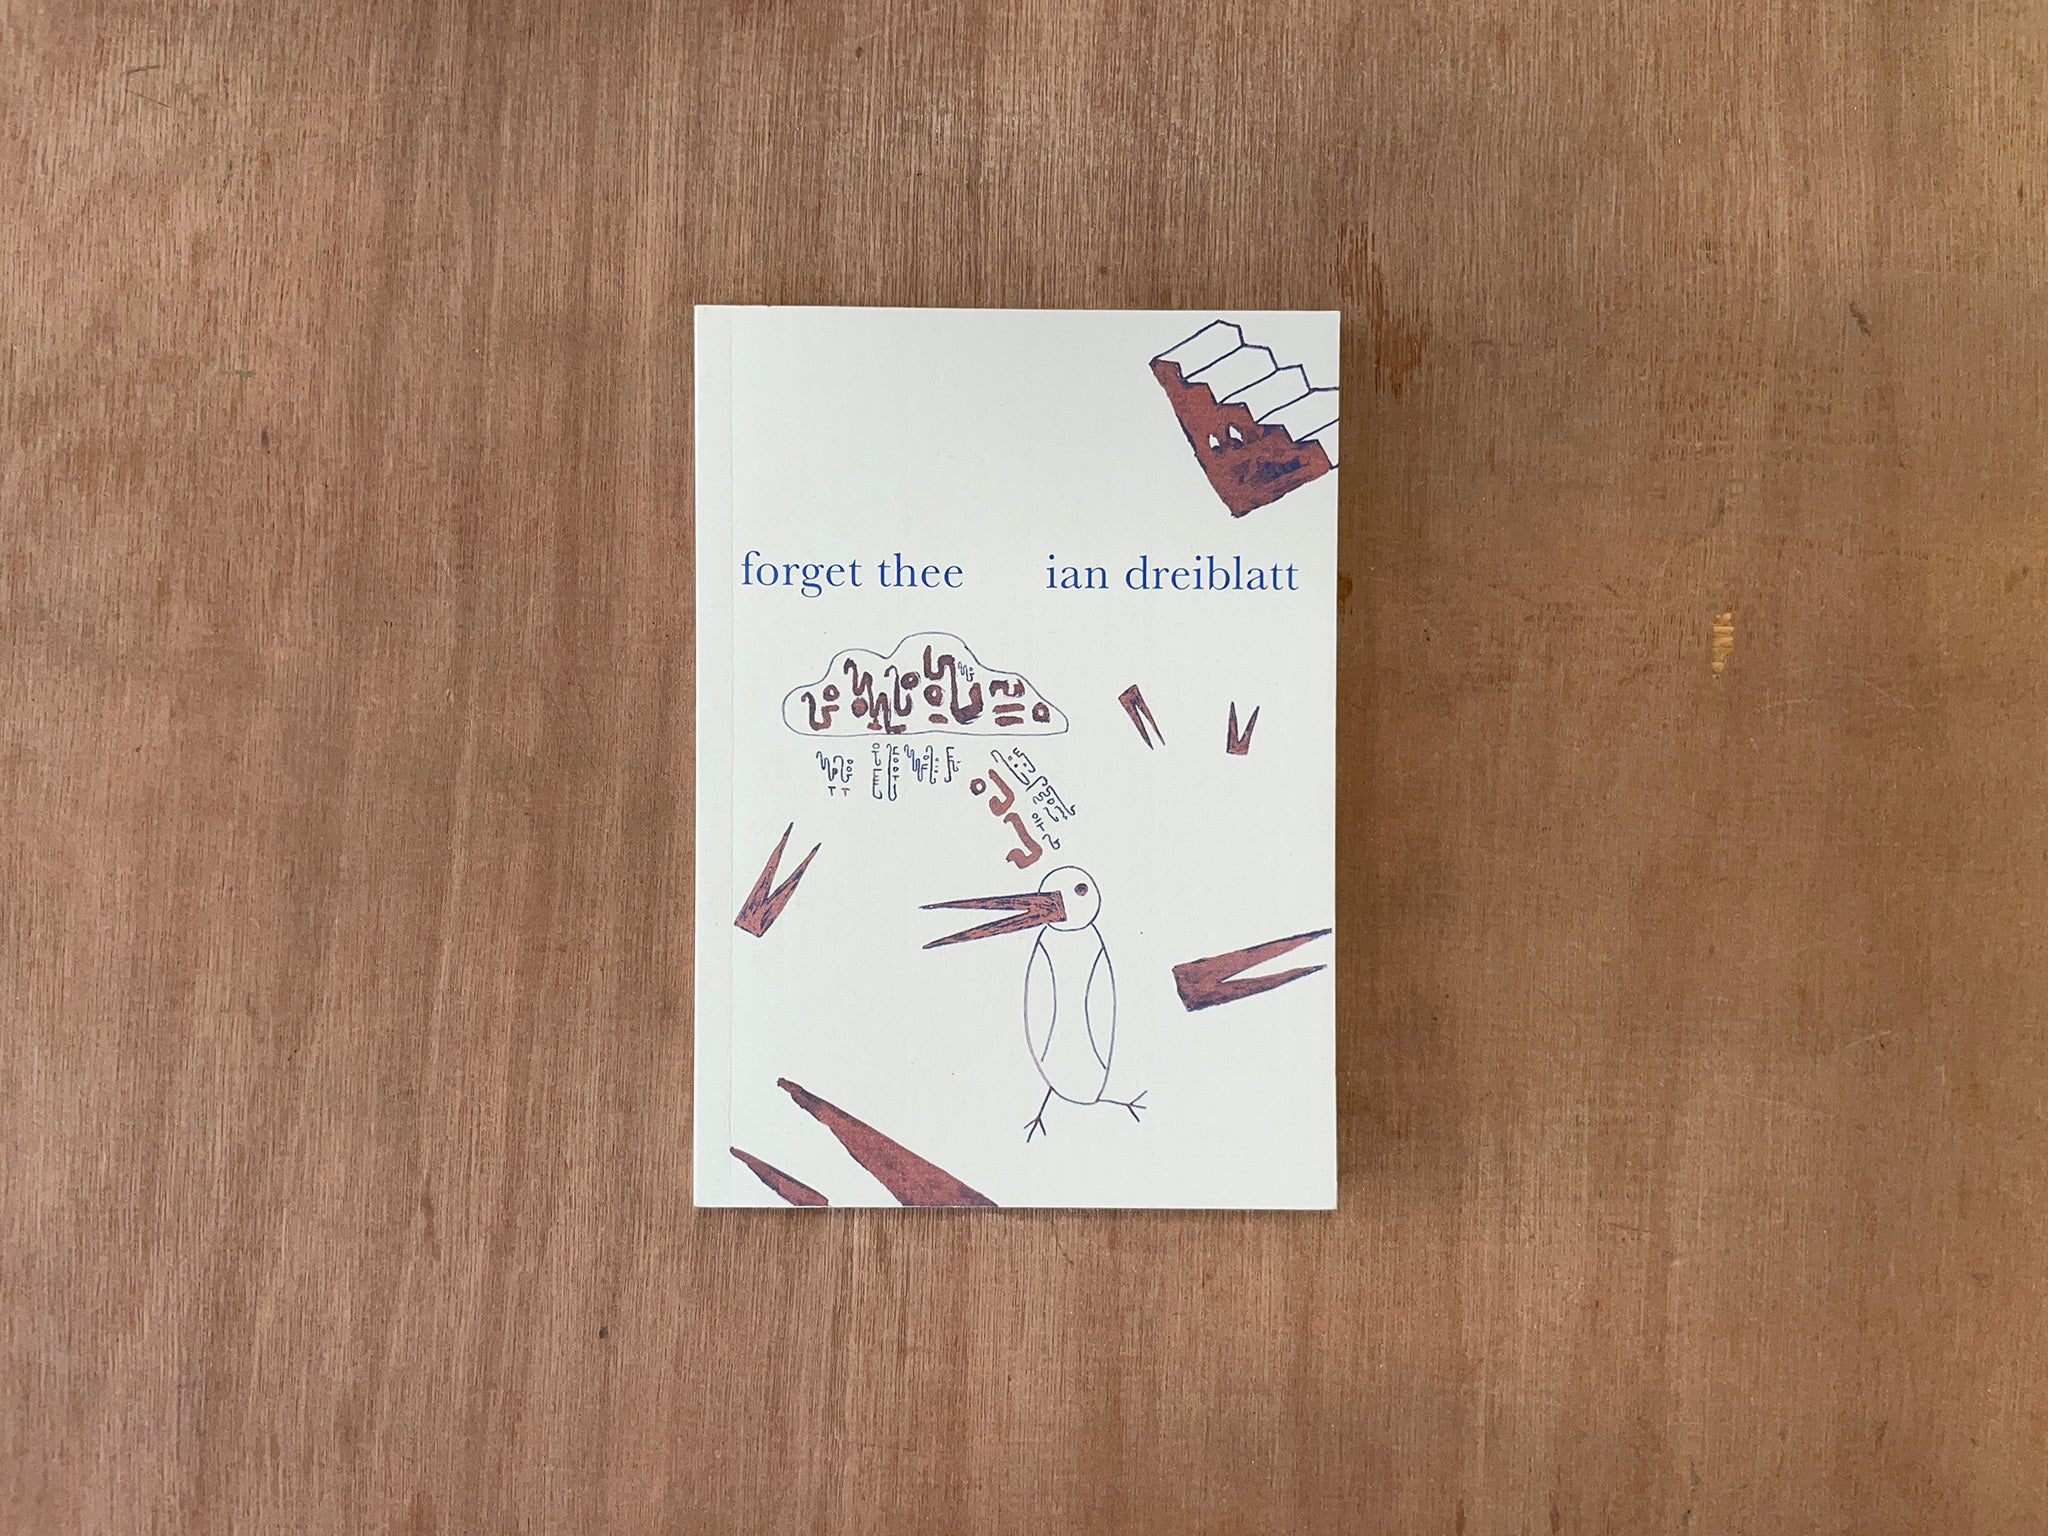 FORGET THEE by Ian Dreiblatt